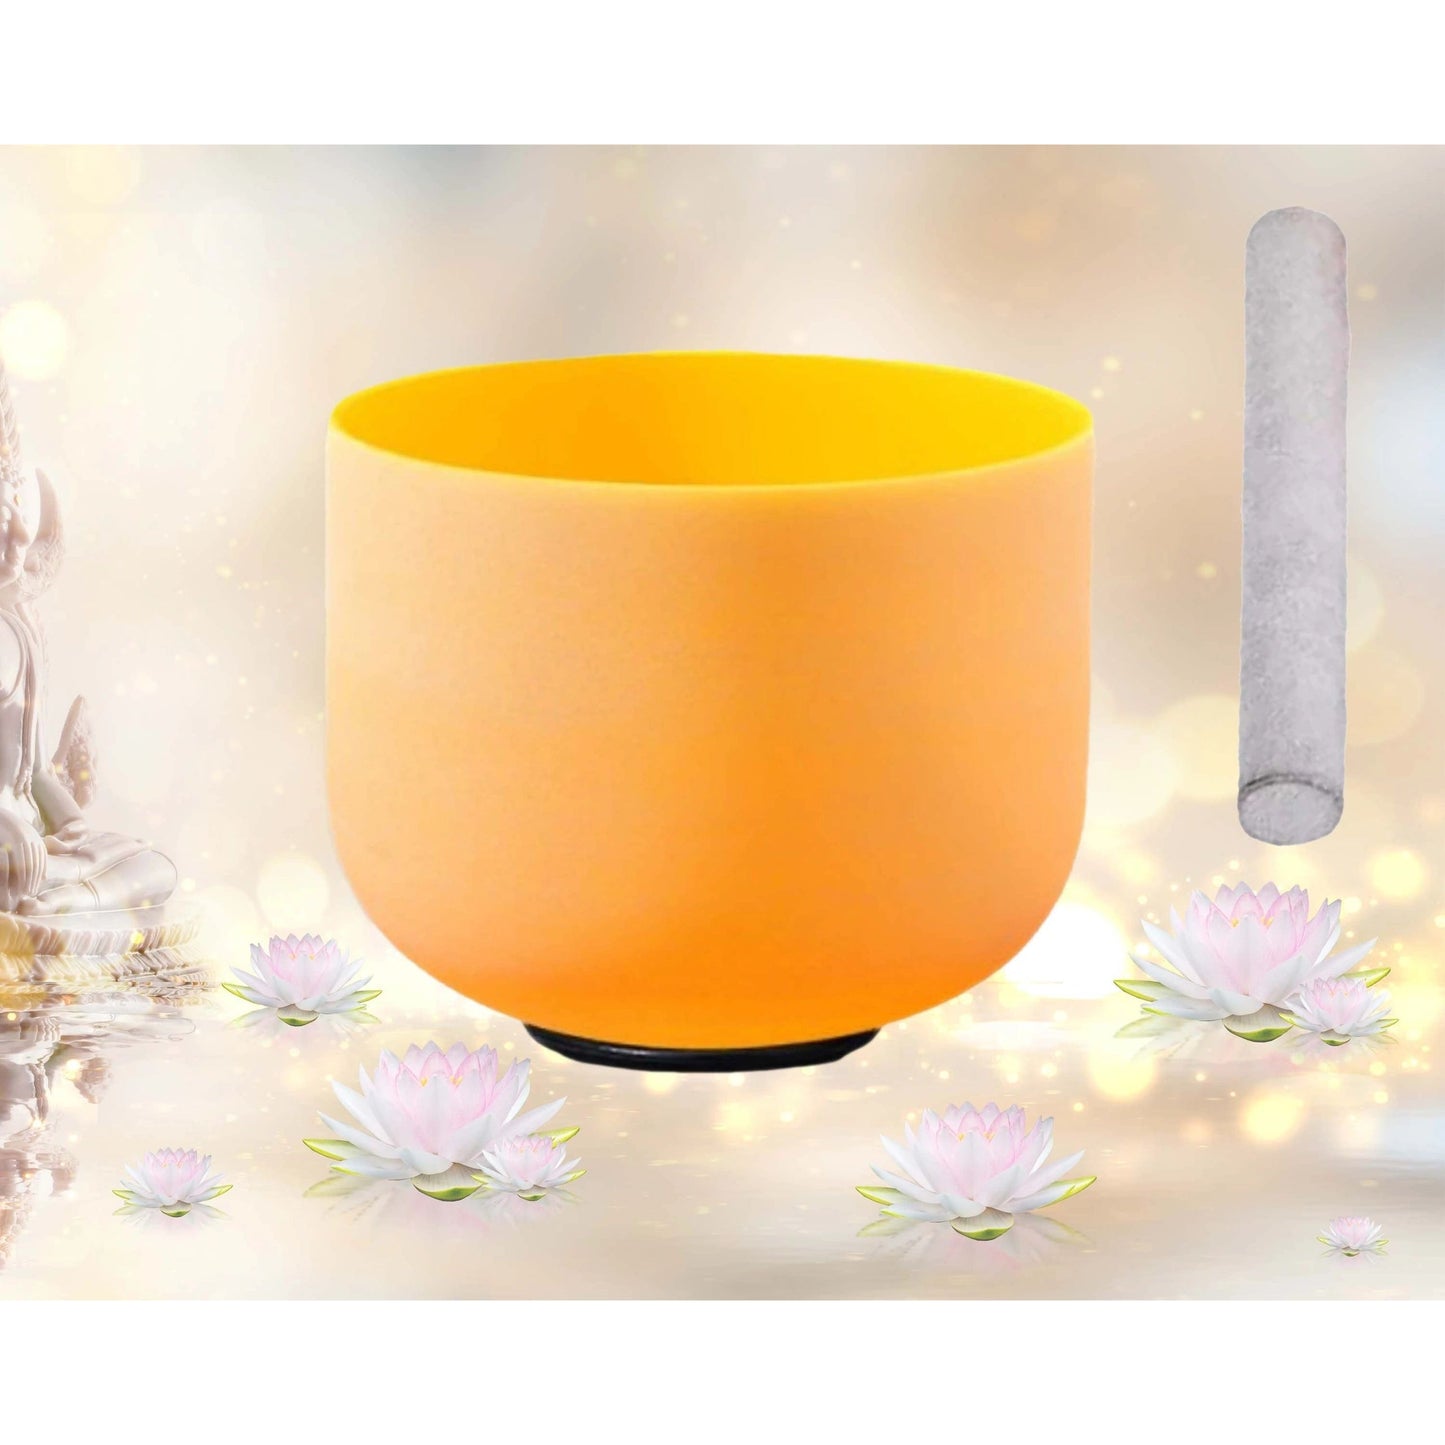 Yellow Crystal Quartz Singing Bowl with 1 Mallet & O Ring - Meditation, Solar Plexus